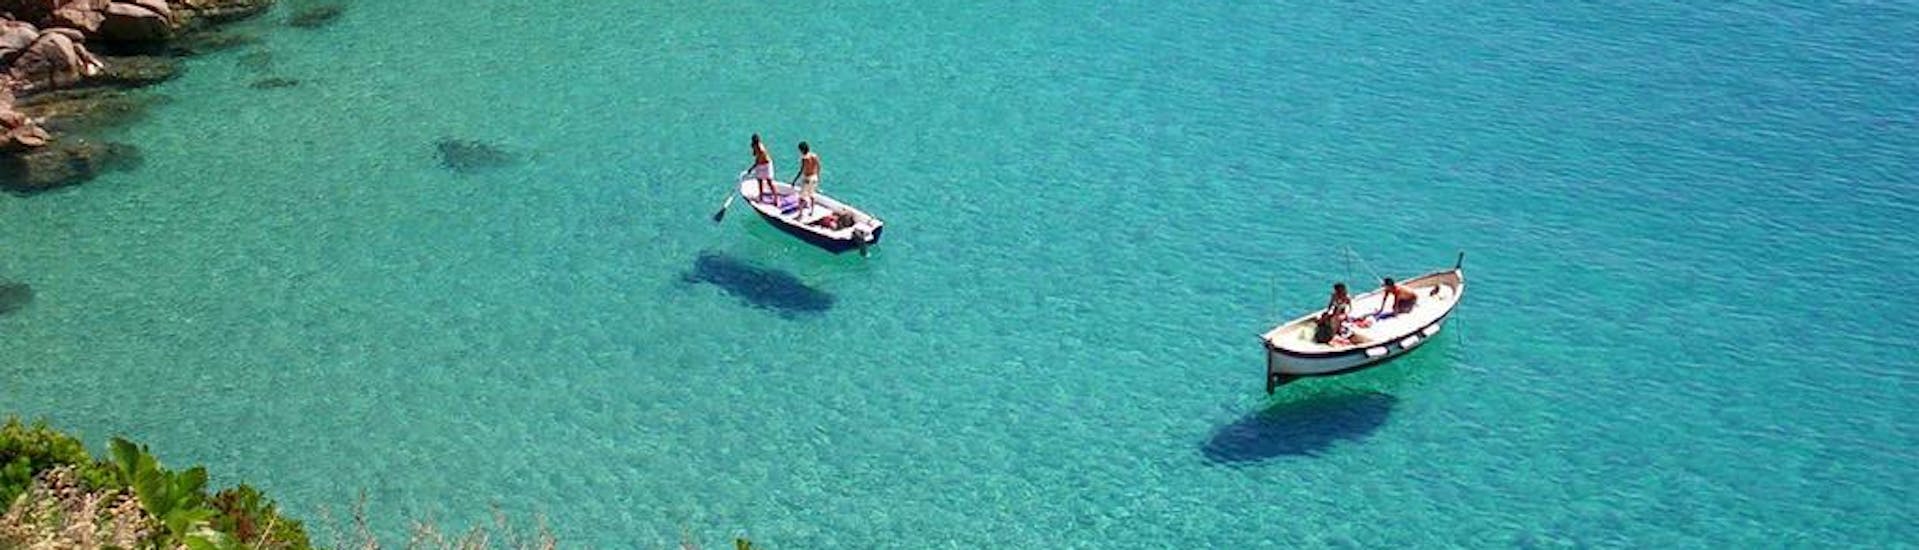 Il mare limpido dell'isola del giglio con Gita in Barca all'Isola del Giglio con pranzo e snorkeling con La Favorita sul Mare Argentario.